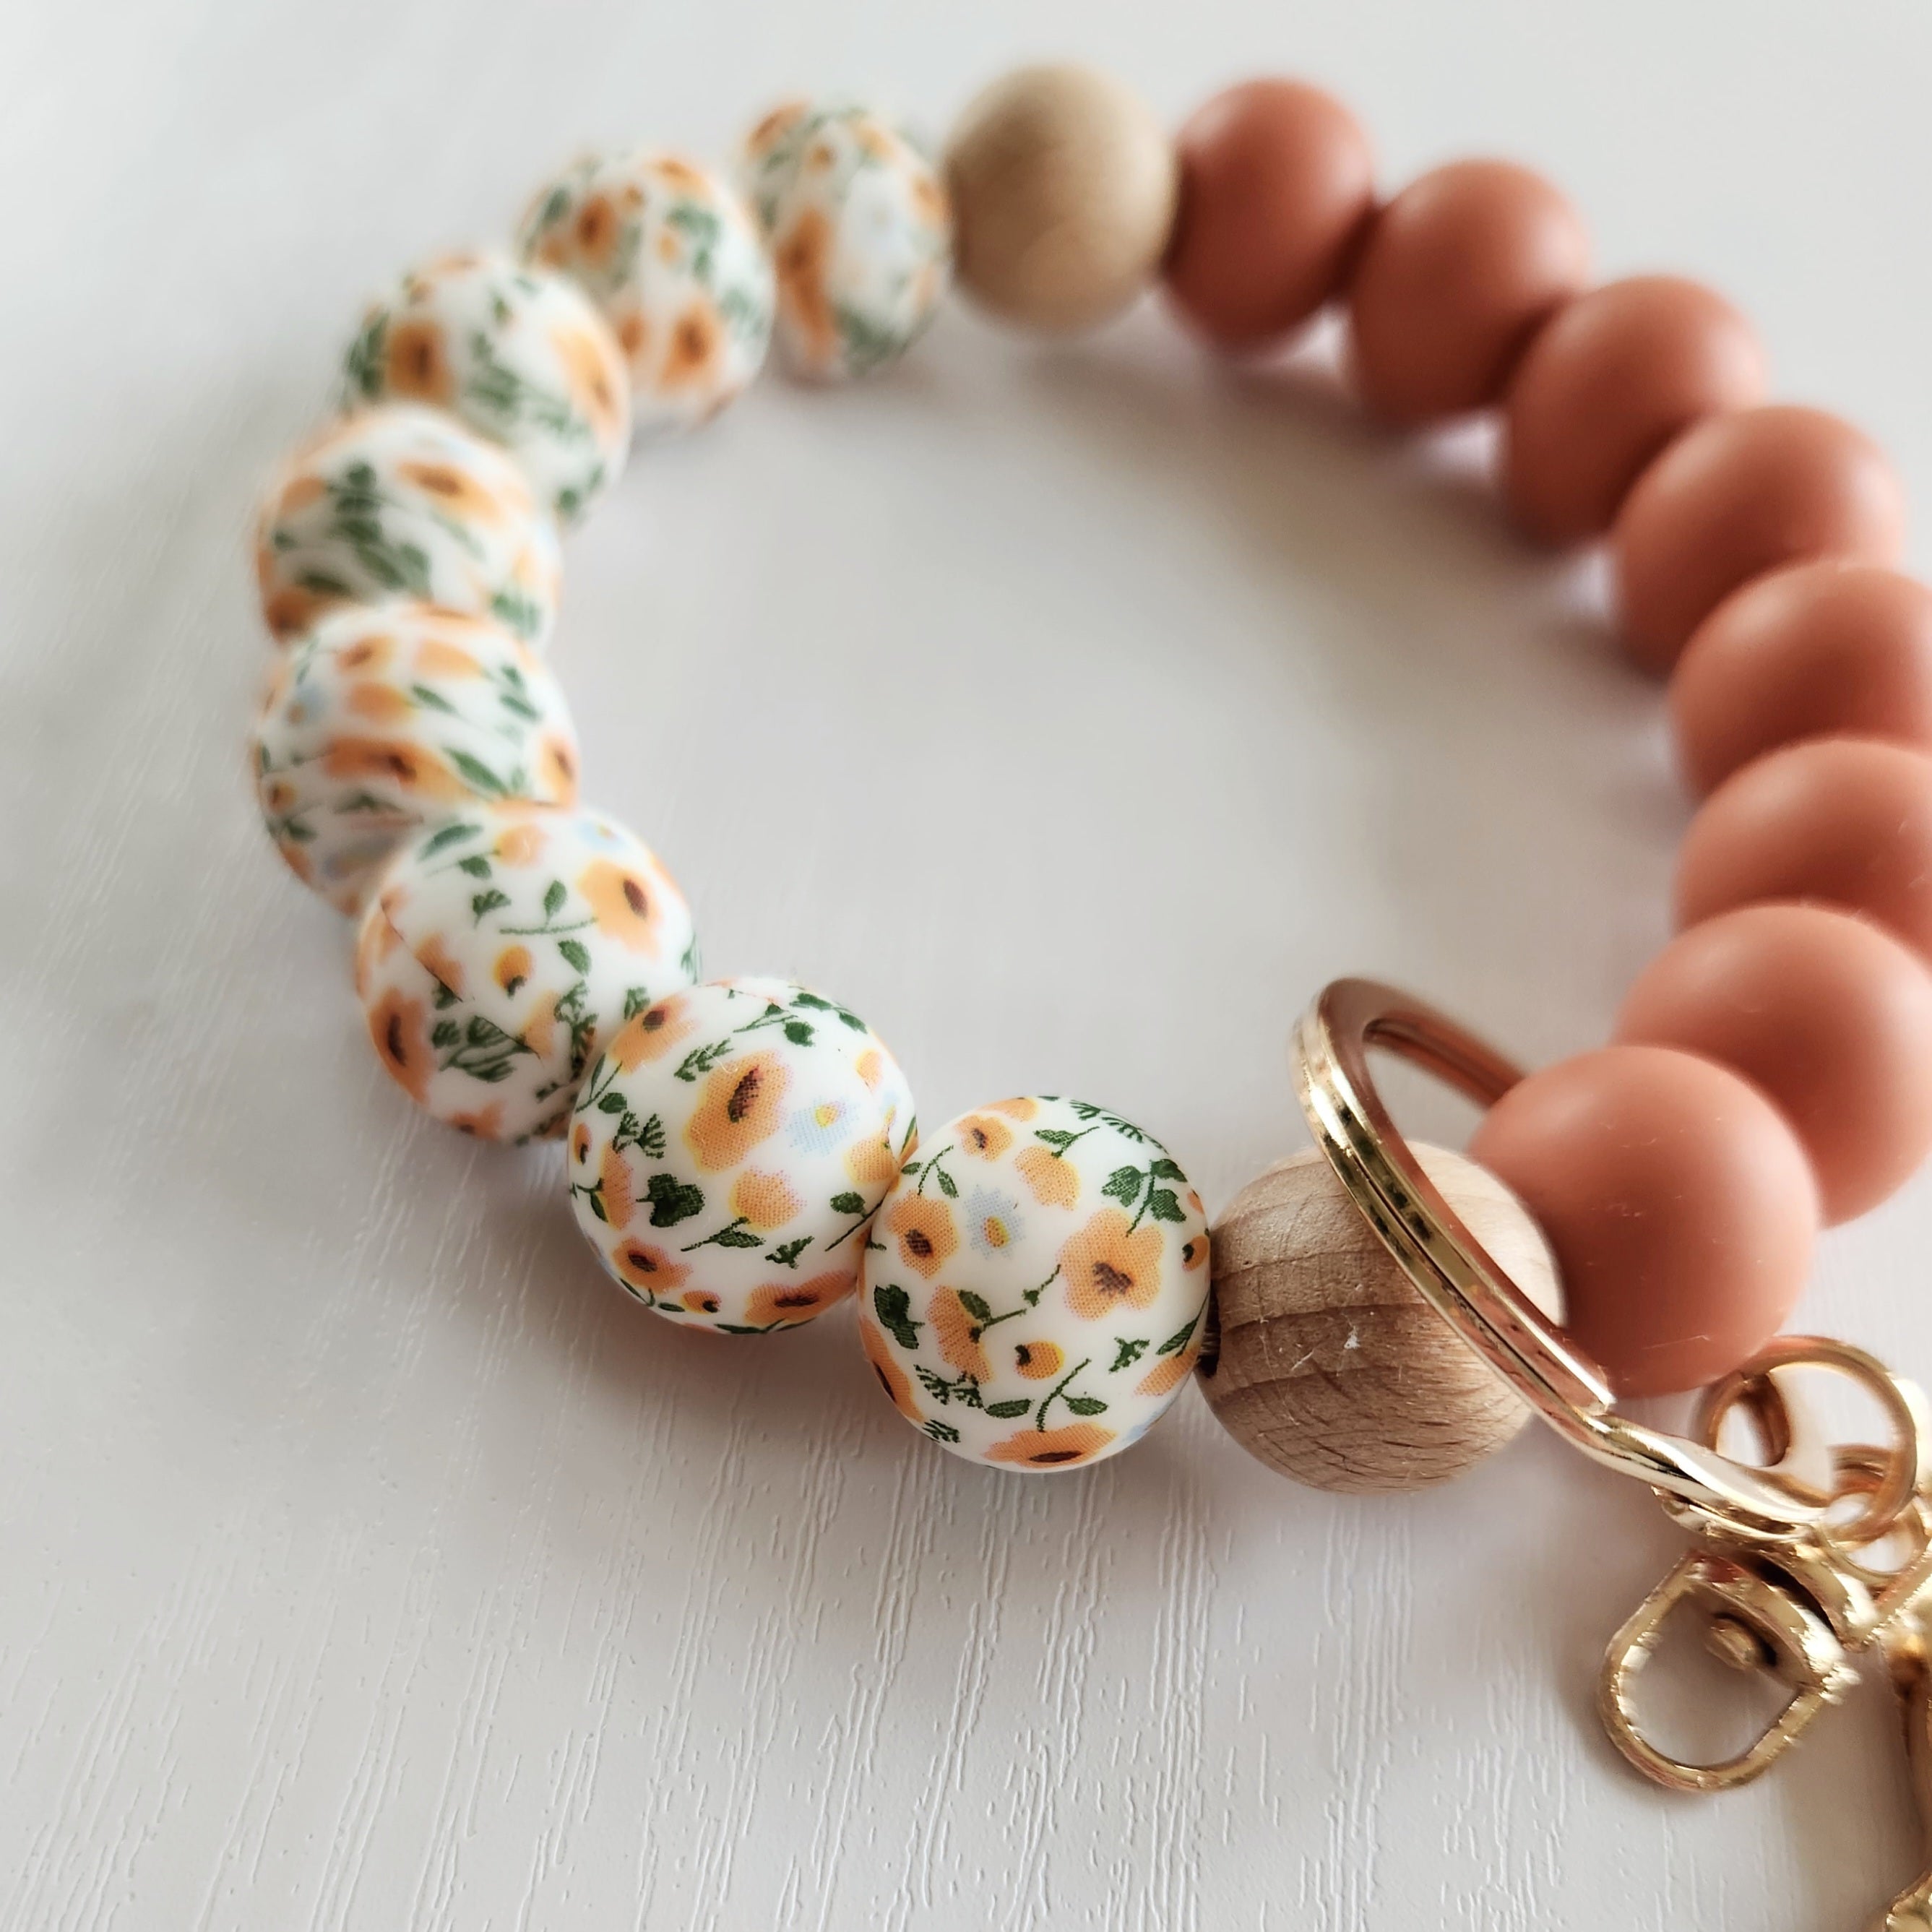 Nouv. Bracelet porte-clé - Fleur orangé & Cantaloup